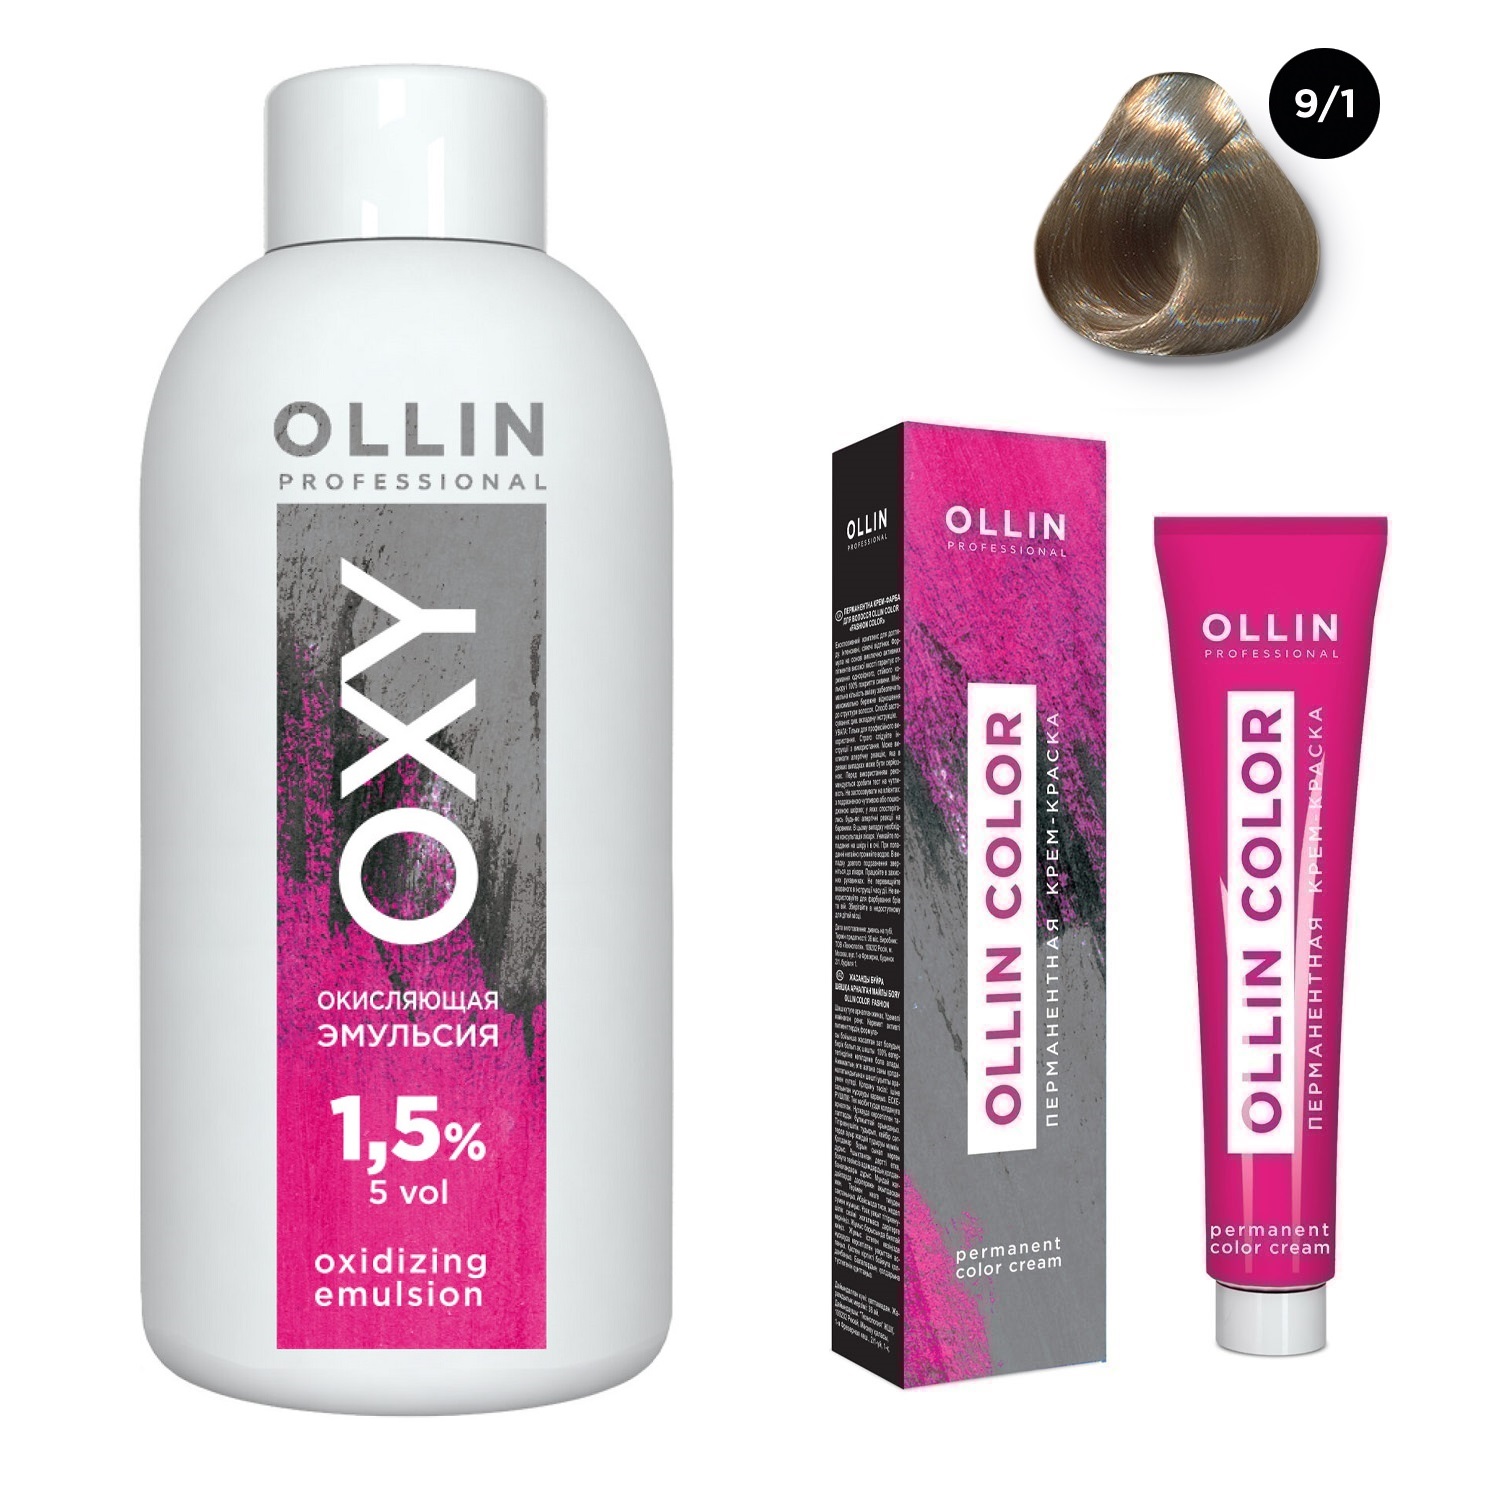 ollin professional окисляющая эмульсия oxy 9 % 1000 мл Ollin Professional Набор Перманентная крем-краска для волос Ollin Color оттенок 9/1 блондин пепельный 100 мл + Окисляющая эмульсия Oxy 1,5% 150 мл (Ollin Professional, Ollin Color)